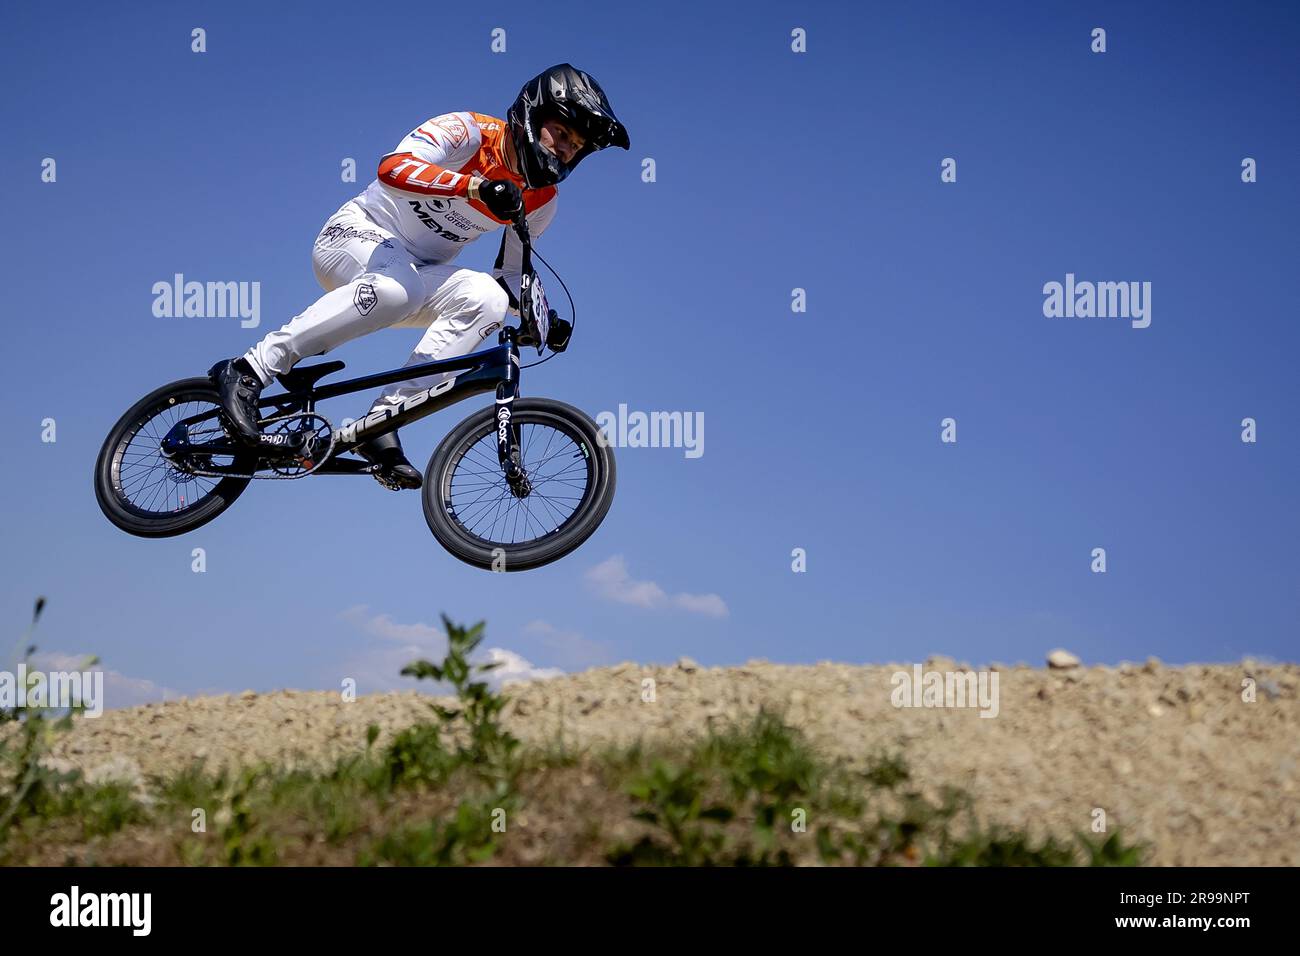 ARNHEM - Niek Kimmann in azione durante il quarto round della Coppa del  mondo BMX. ANP ROBIN VAN LONKHUJSEN Foto stock - Alamy